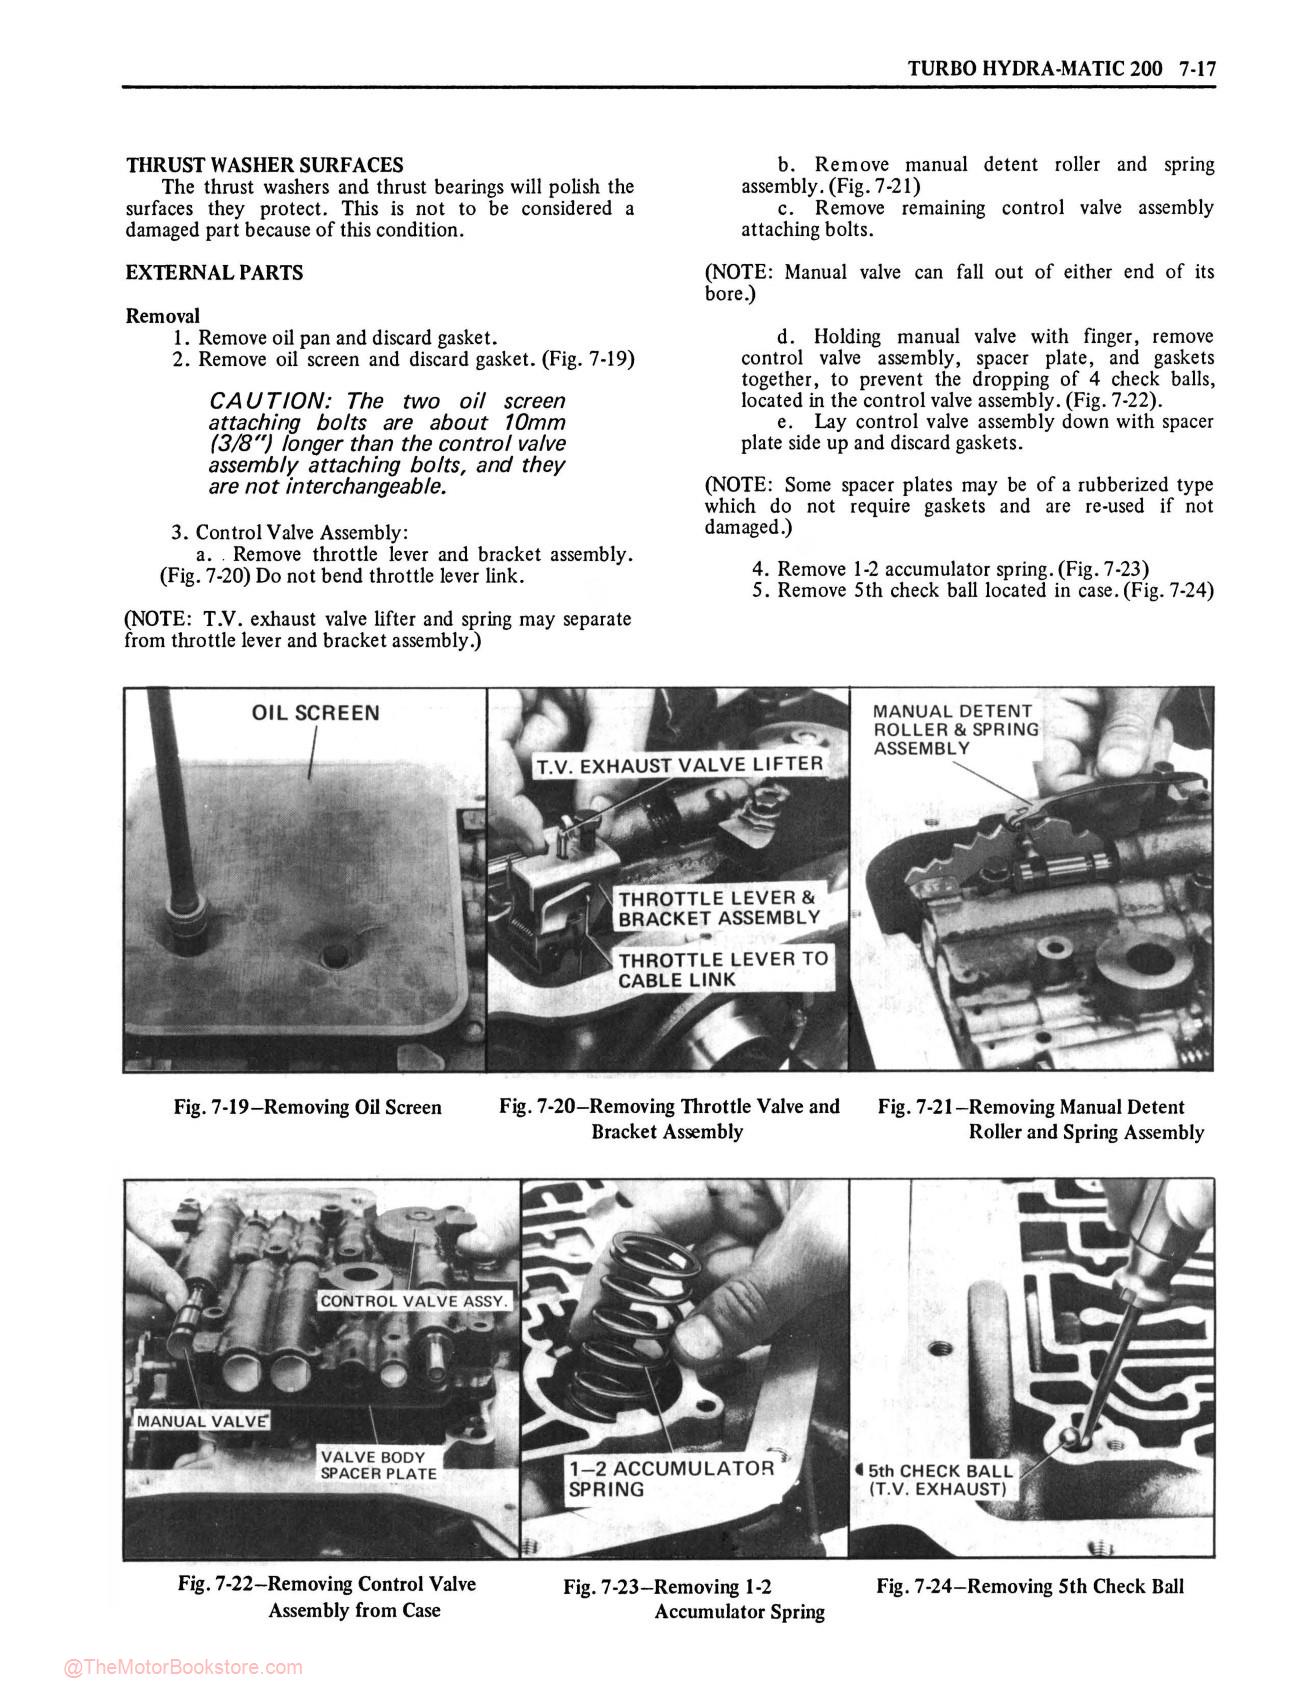 1976 Oldsmobile Service Repair Manual - Sample Page 2